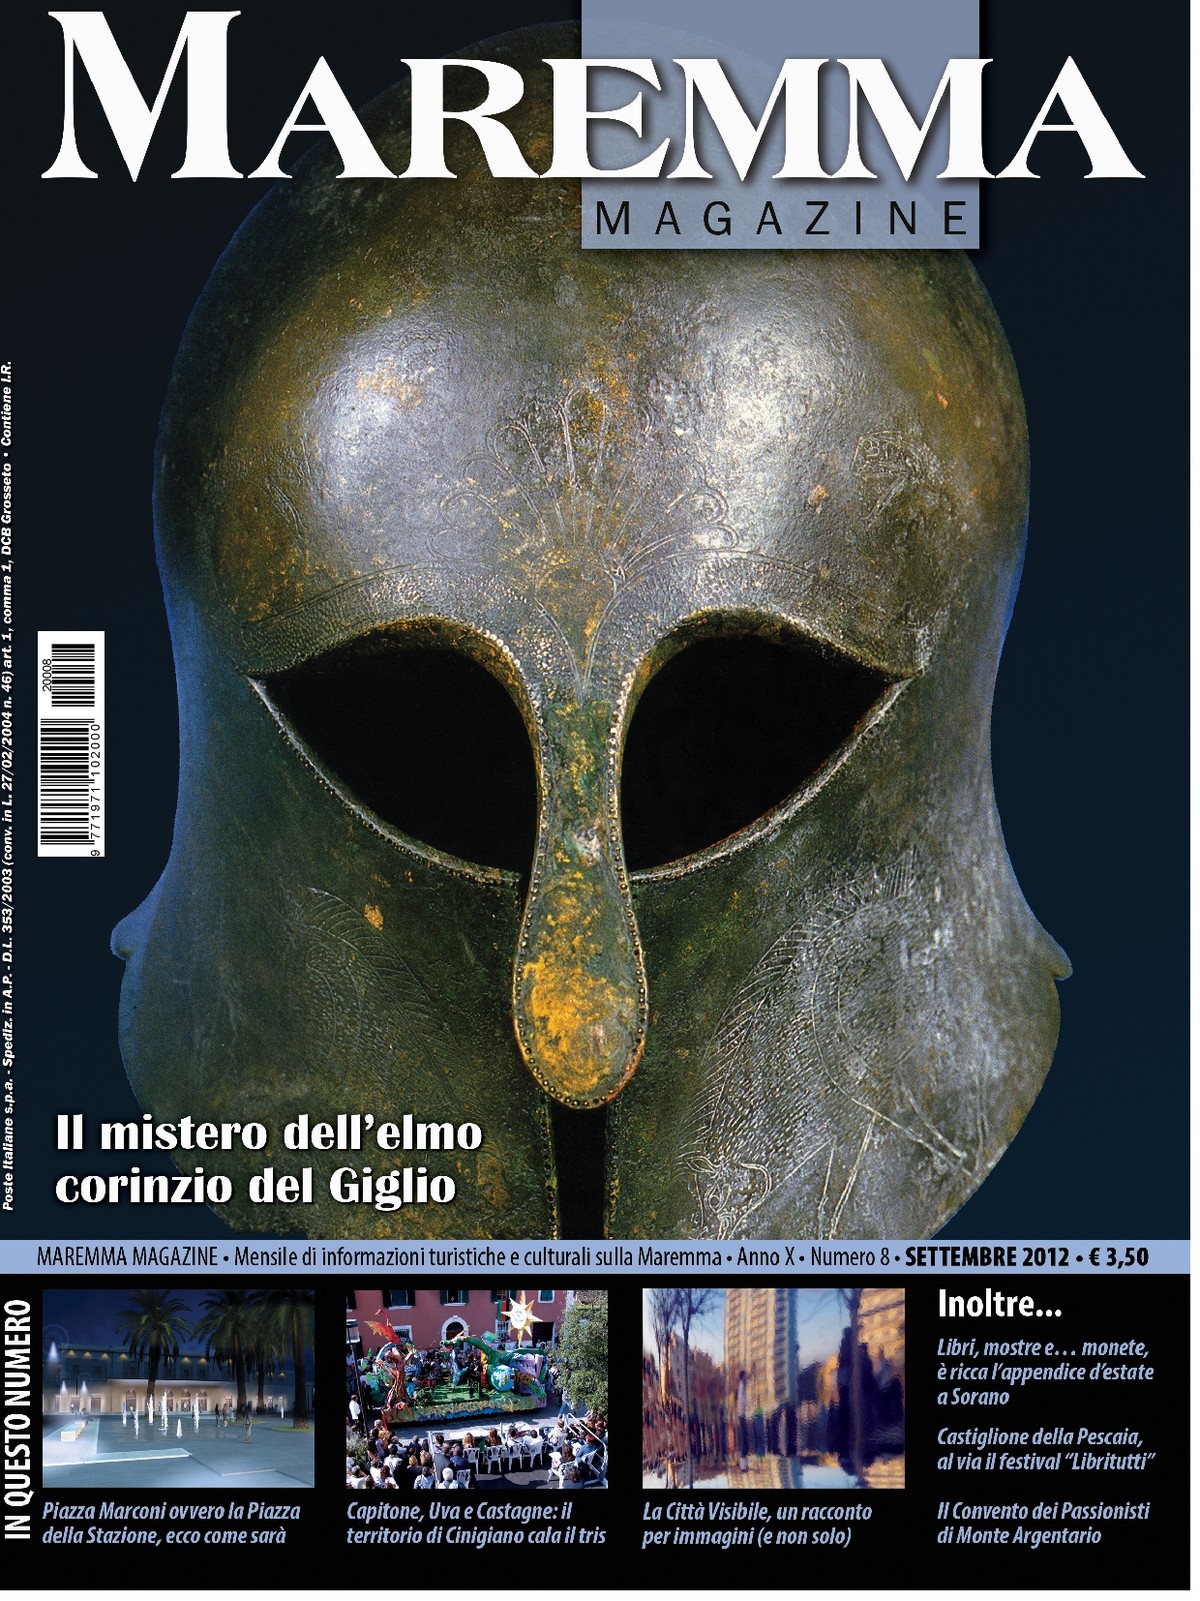 Maremma Magazine - AGOSTO 2016 - Numero 6 - [CS Edizioni srl]